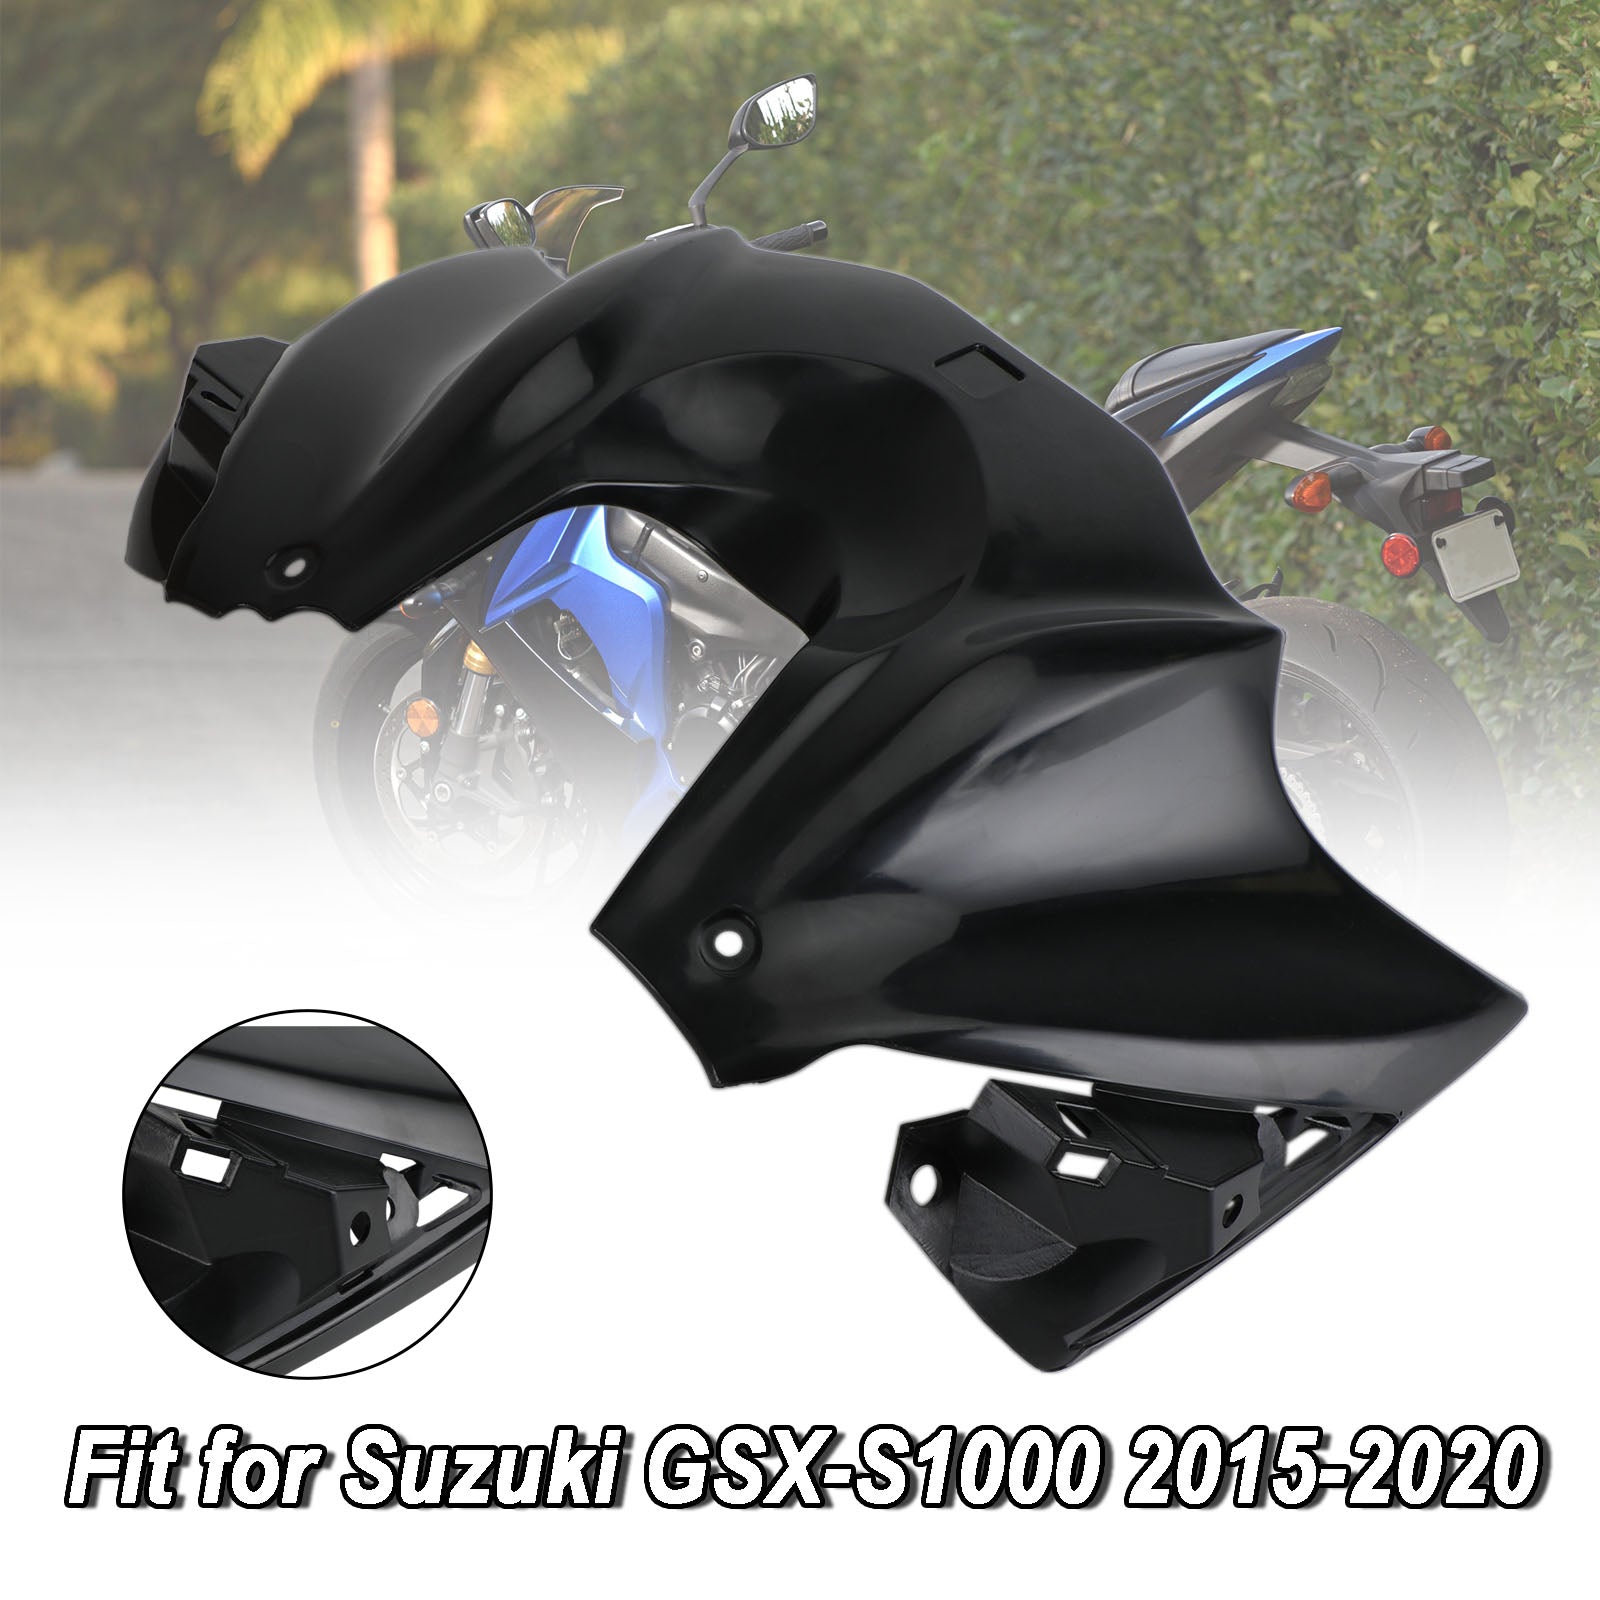 Pannello carenatura coperchio serbatoio anteriore non verniciato per Suzuki GSX-S 1000 2015-2020